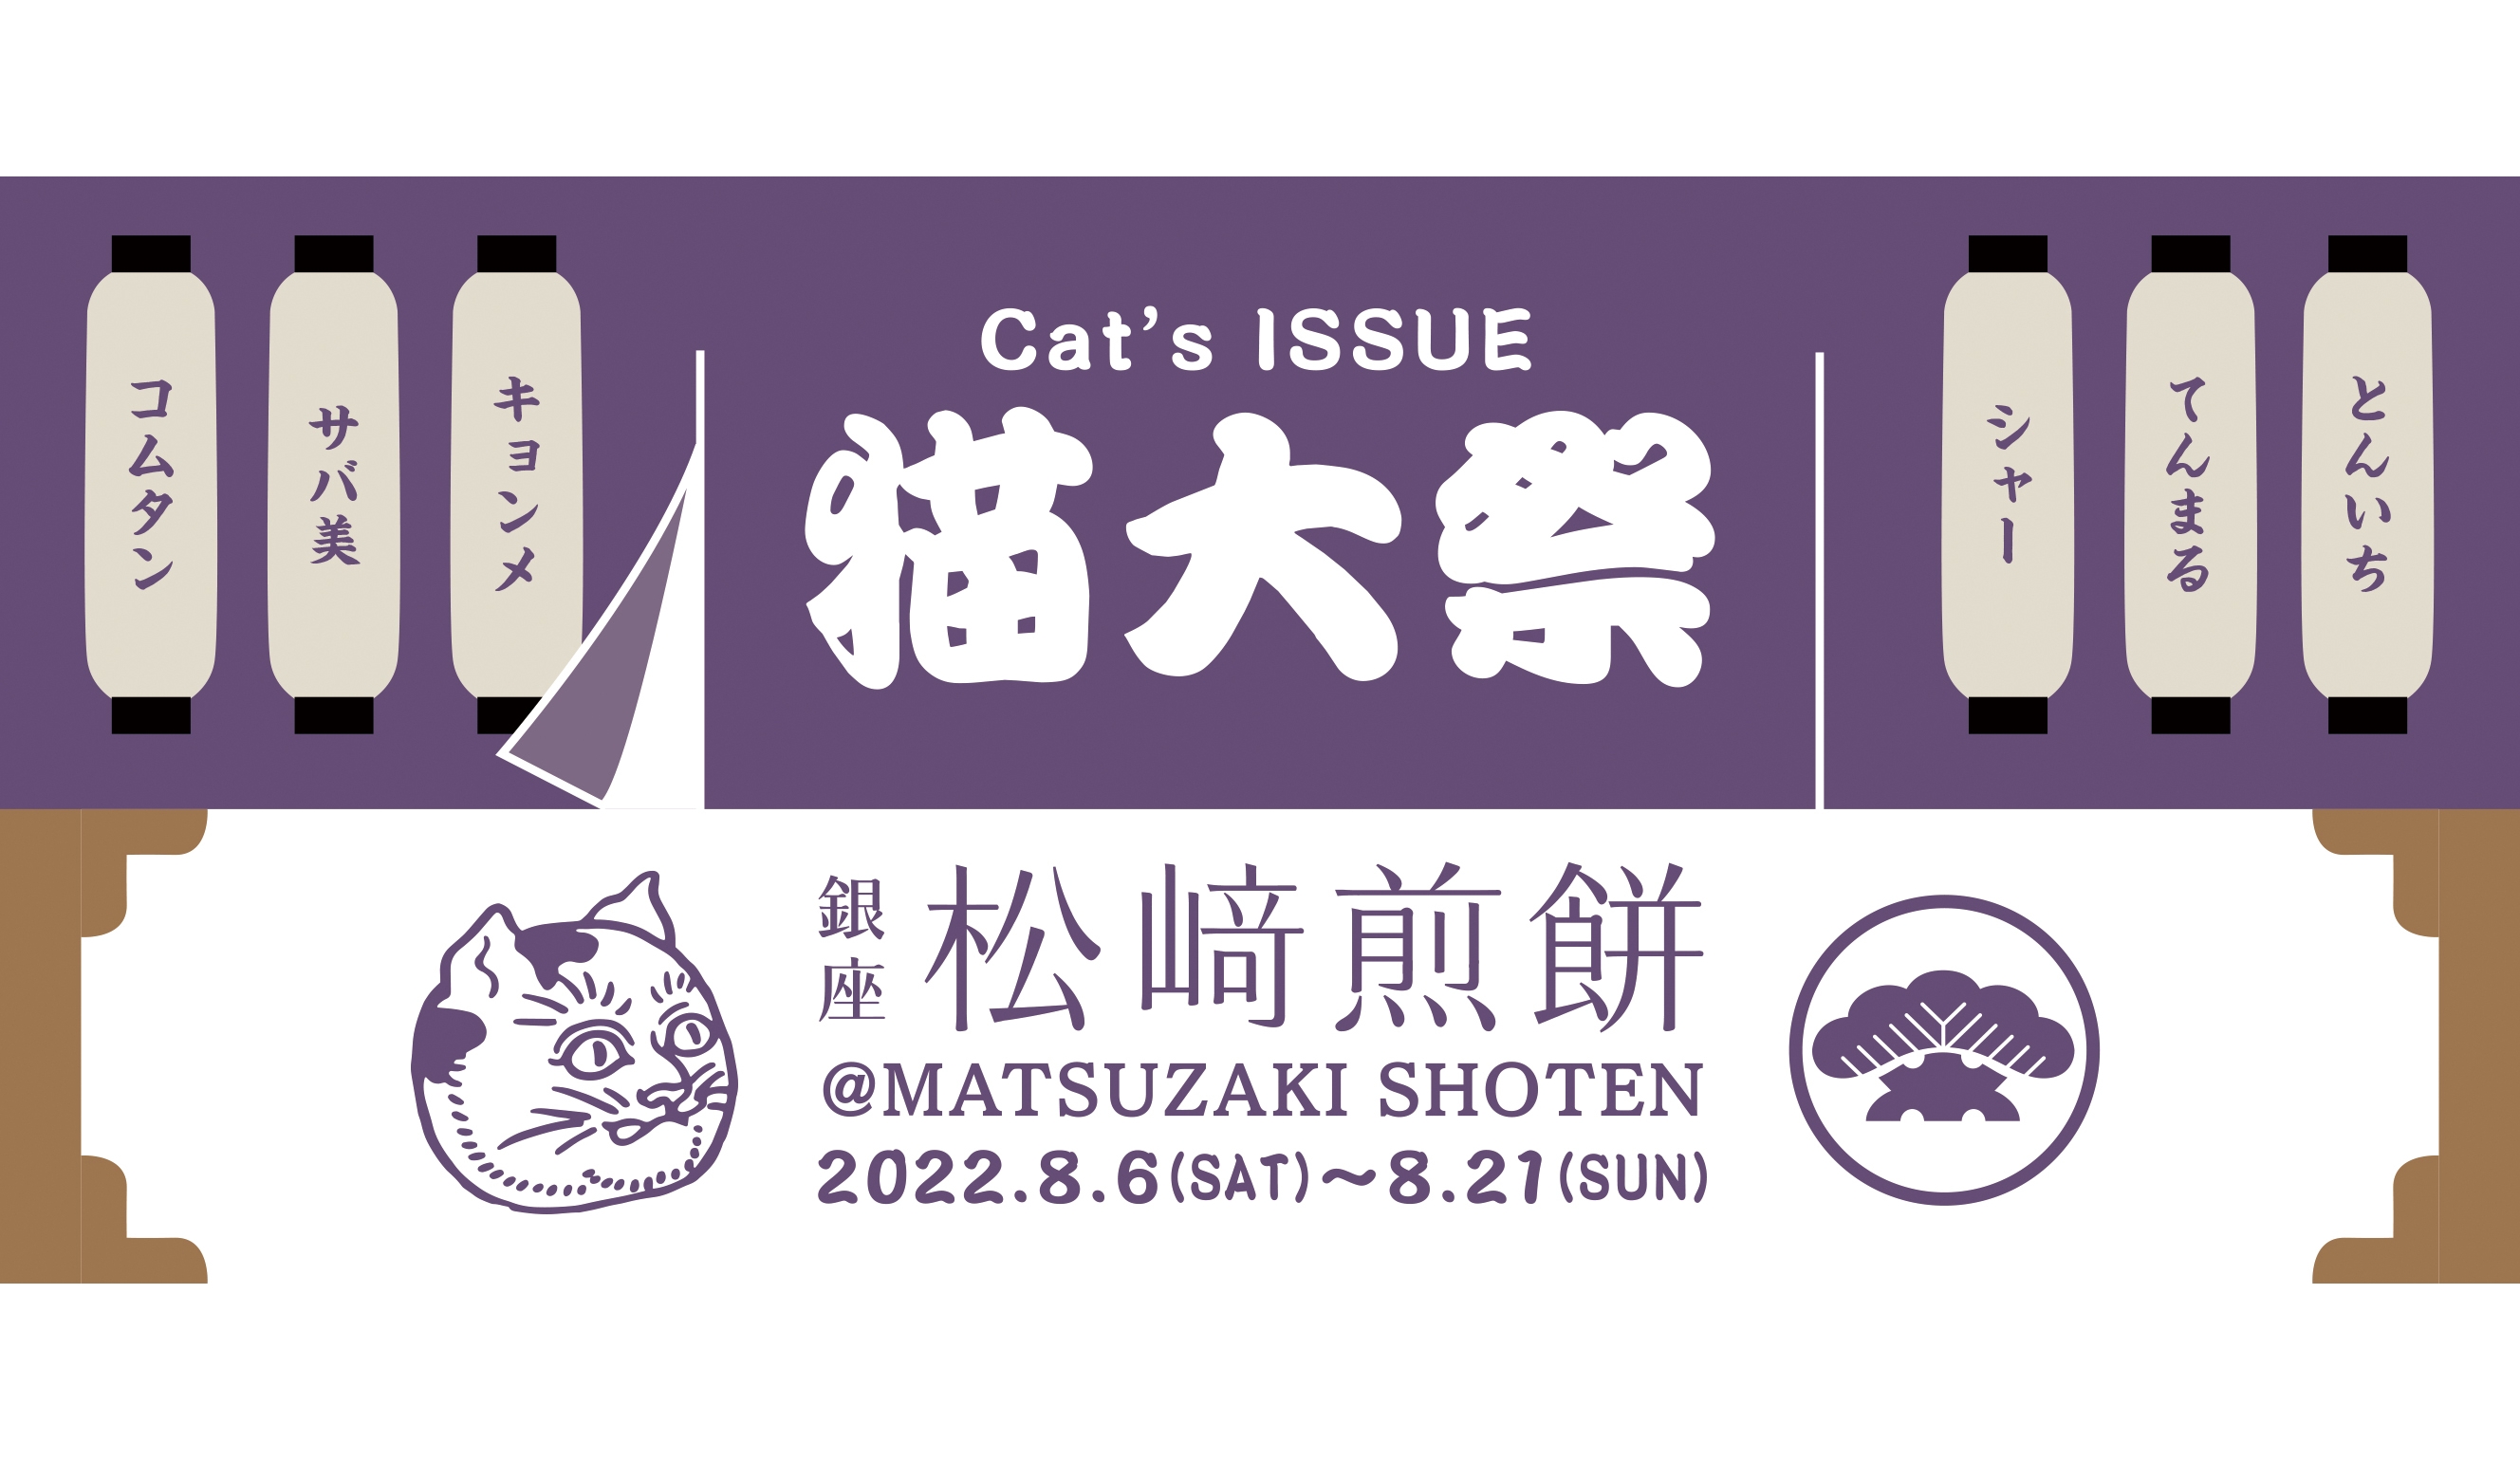 matsuzaki-cats-issue%e7%8c%ab%e5%a4%a7%e7%a5%ad20225